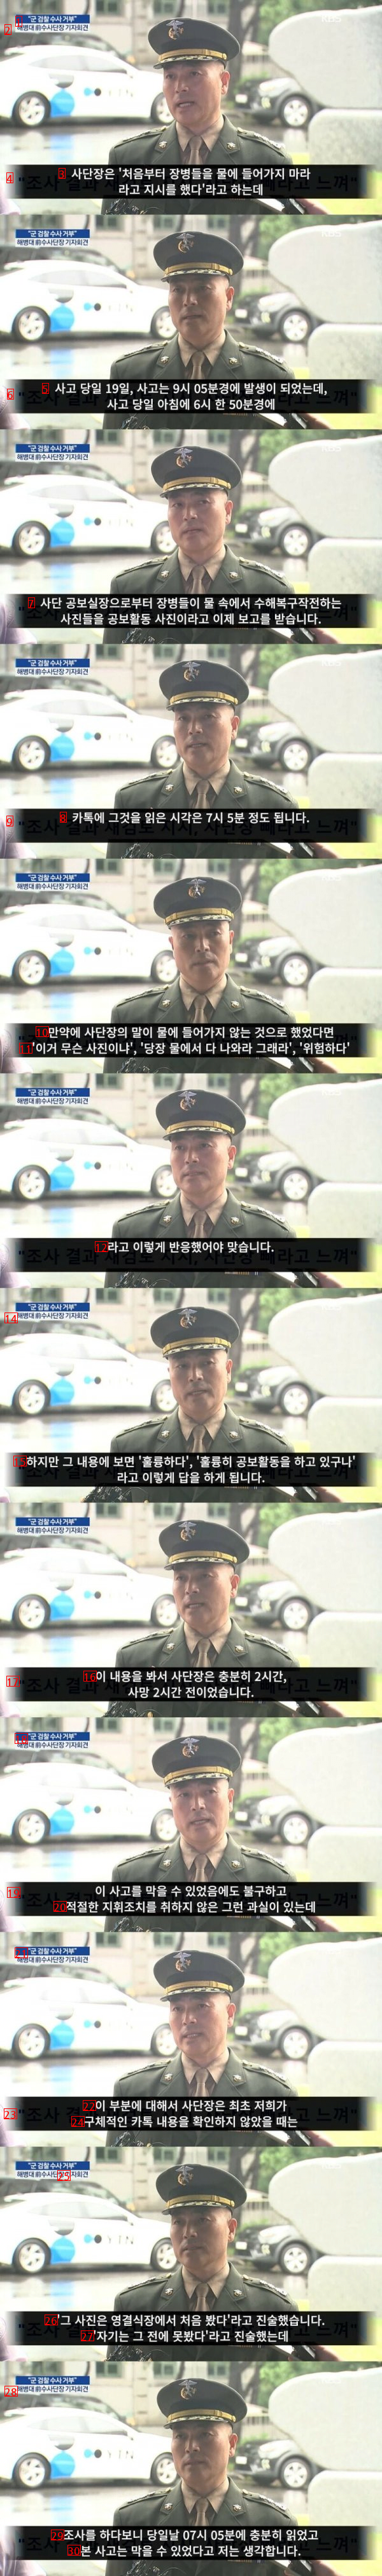 대한민국 해병대의 어퓨굿맨